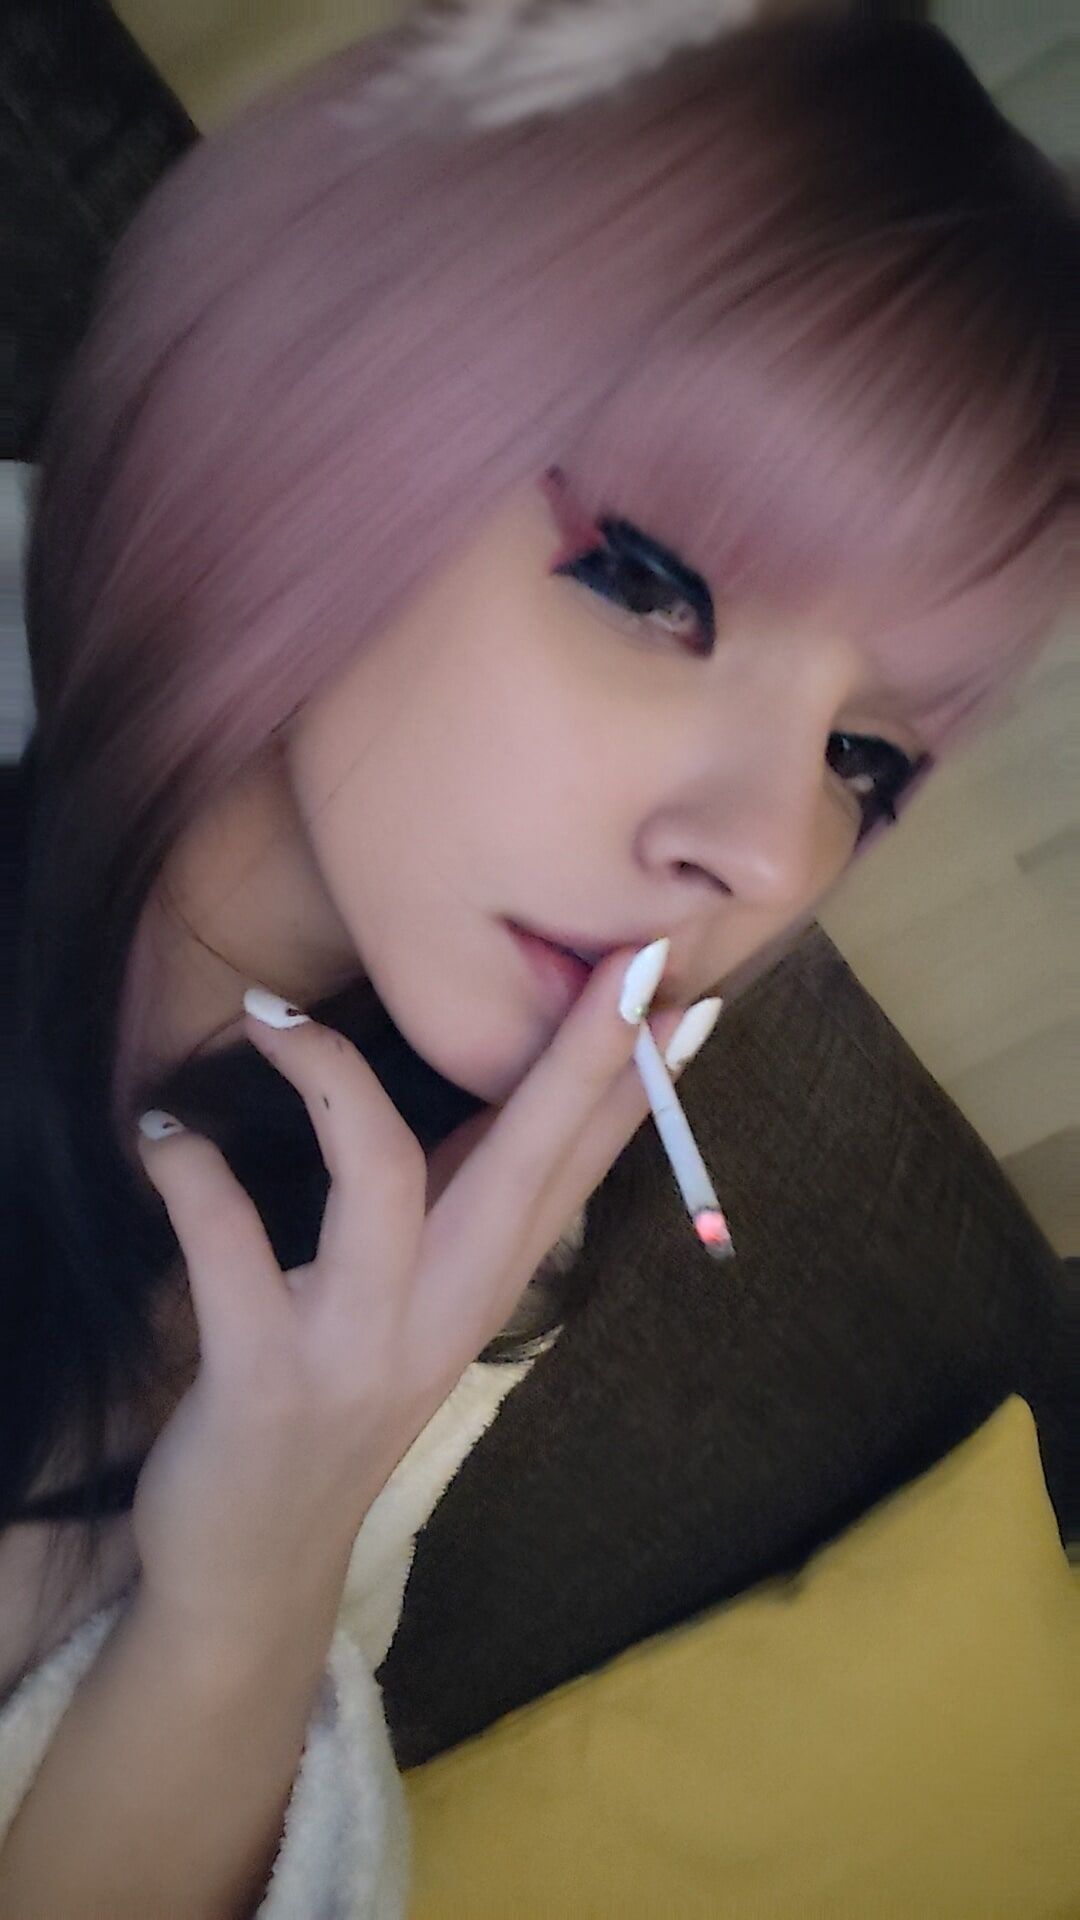 Anime Girl smoking